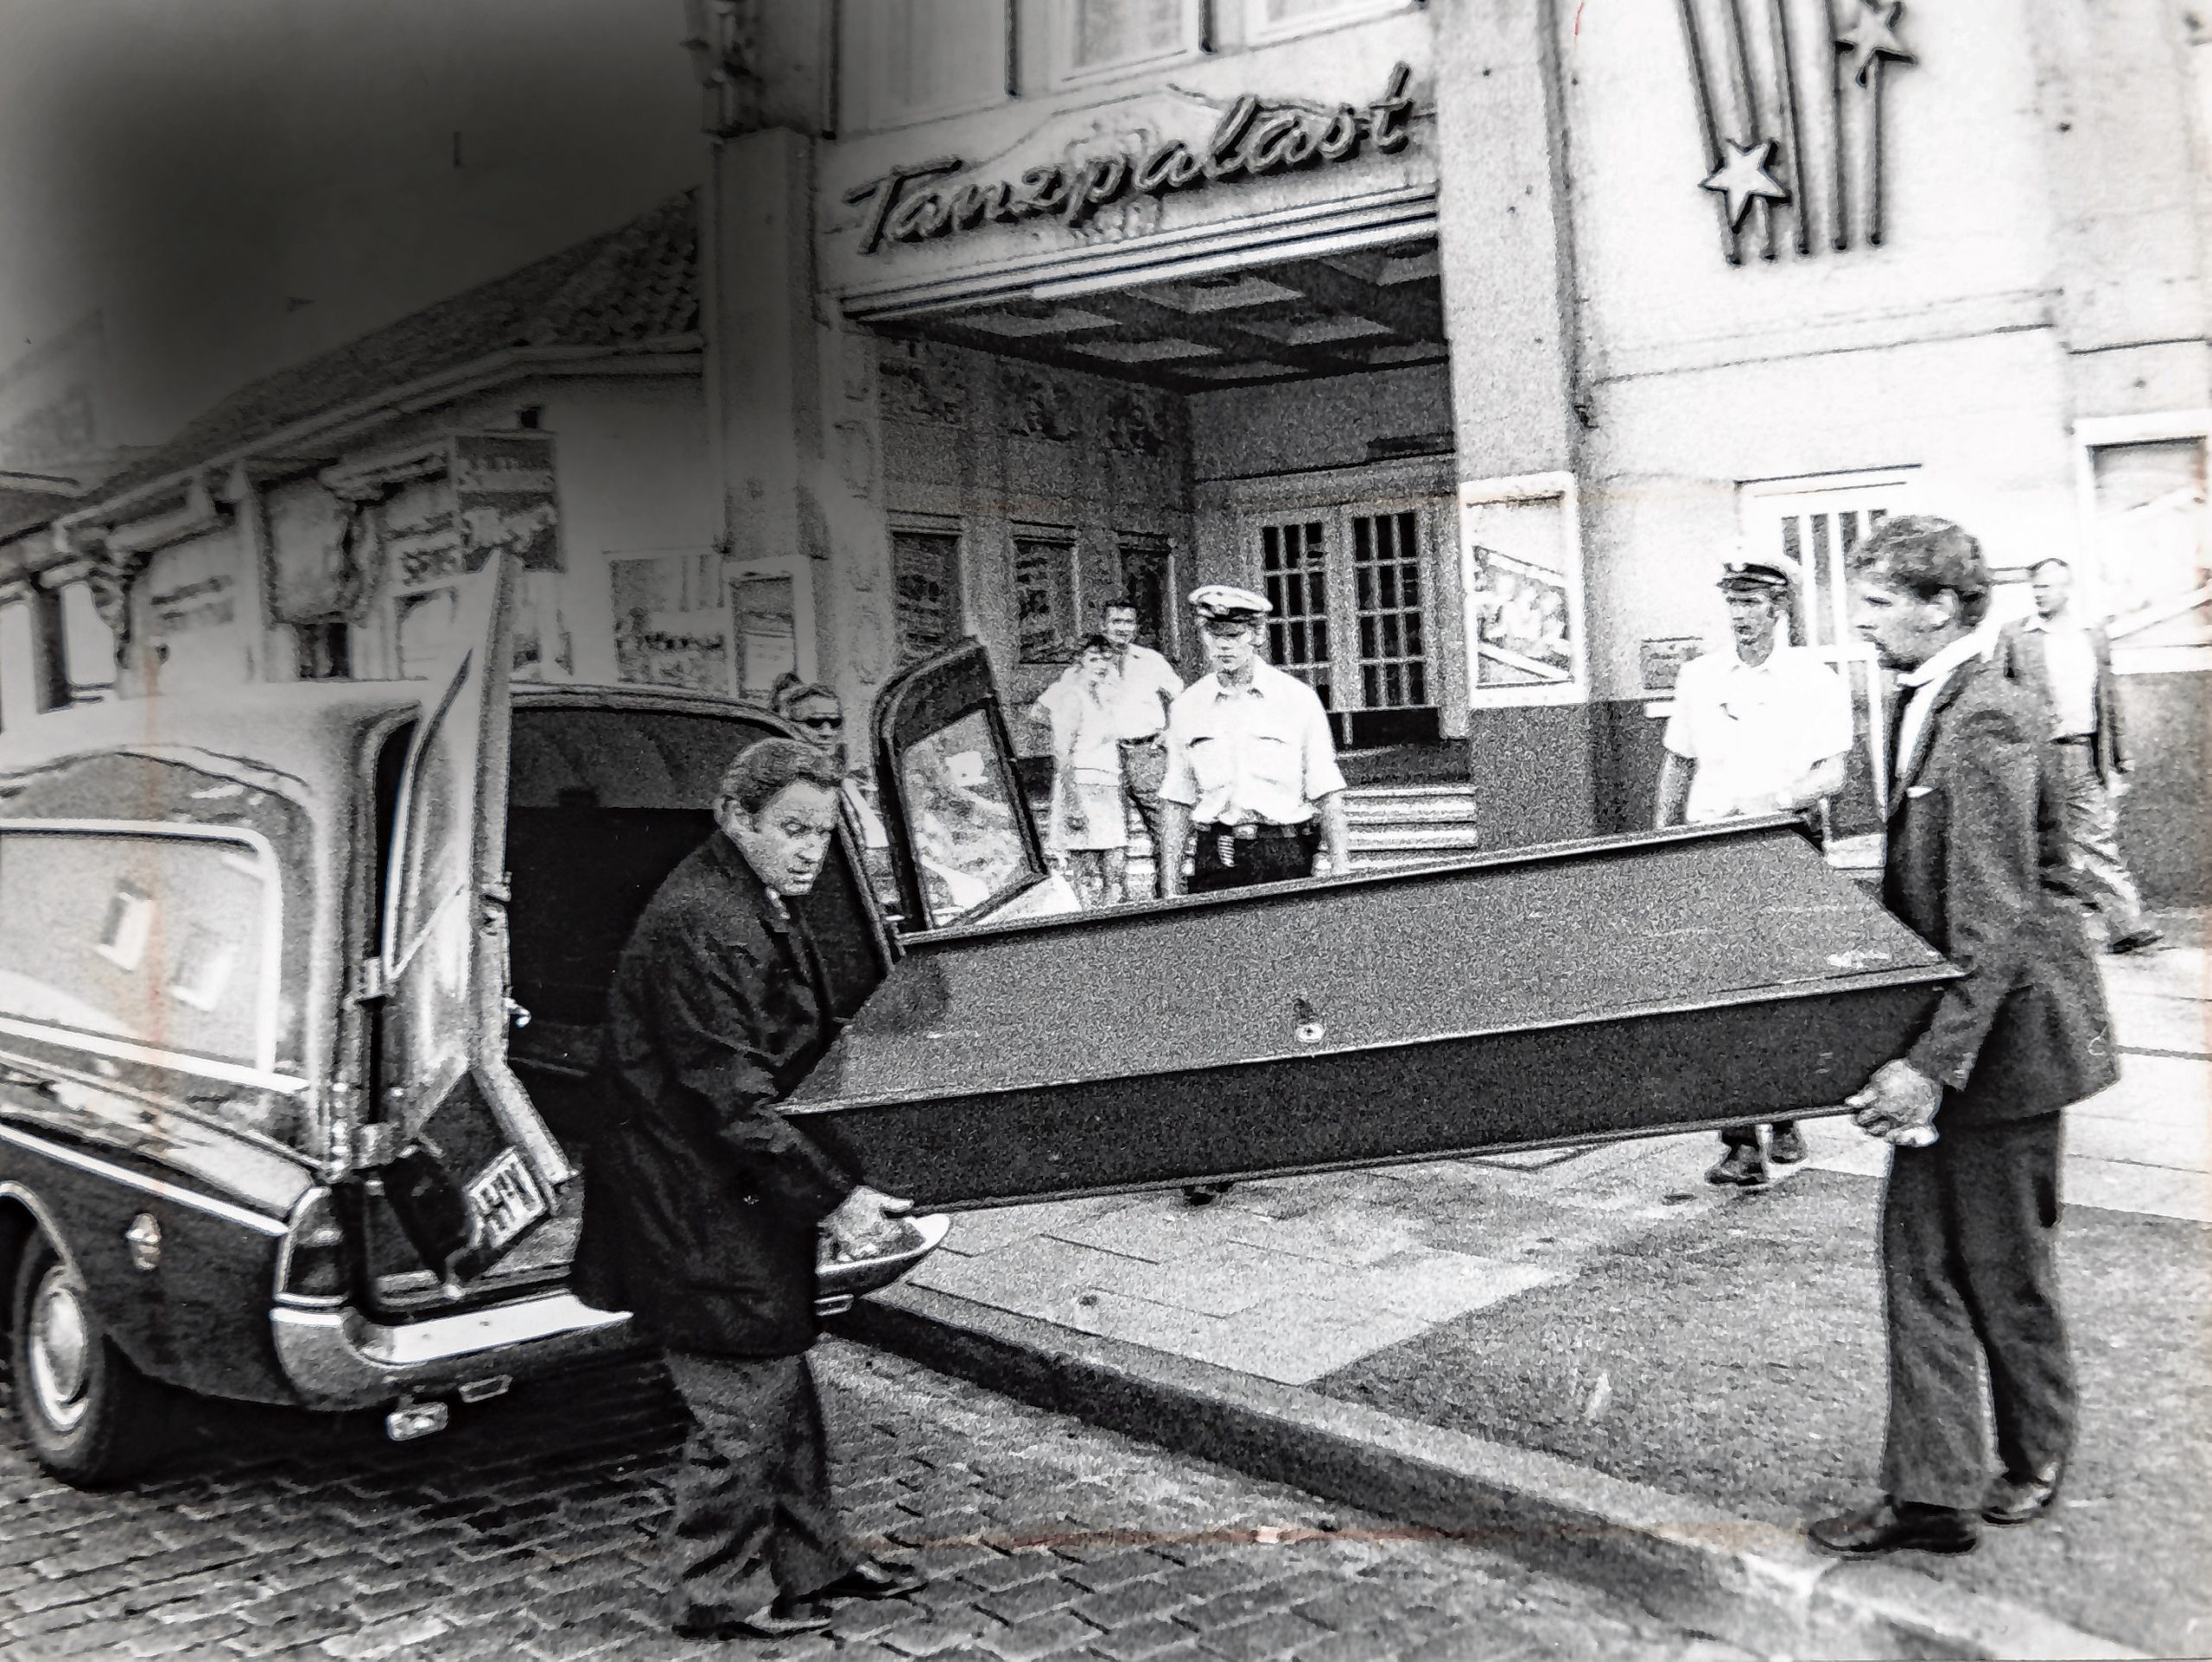 Am 14. August 1973 wird der Sarg mit der Leiche der 22-Jährigen aus dem heutigen „Deplhi Showpalast“ an der Eimsbütteler Chaussee getragen.